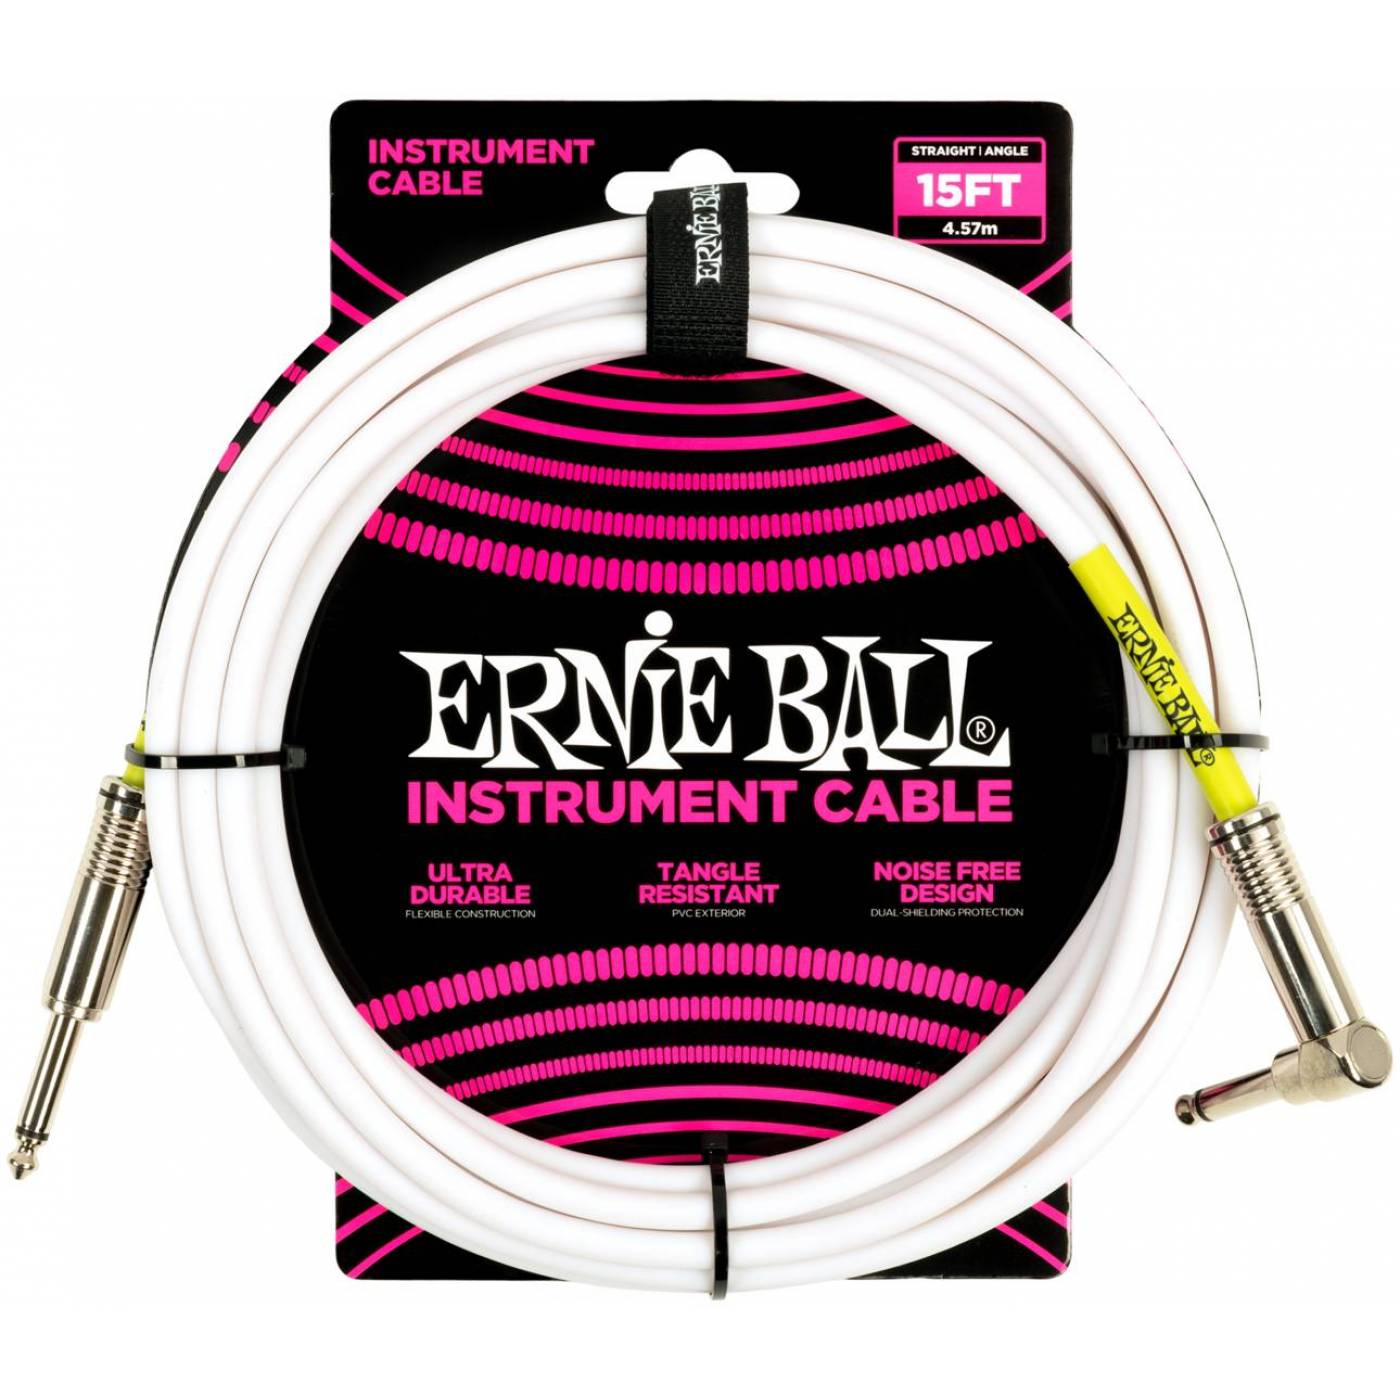 ERNIE BALL 6400 - кабель инструментальный, прямой - угловой джеки, 4,57 метров, белый